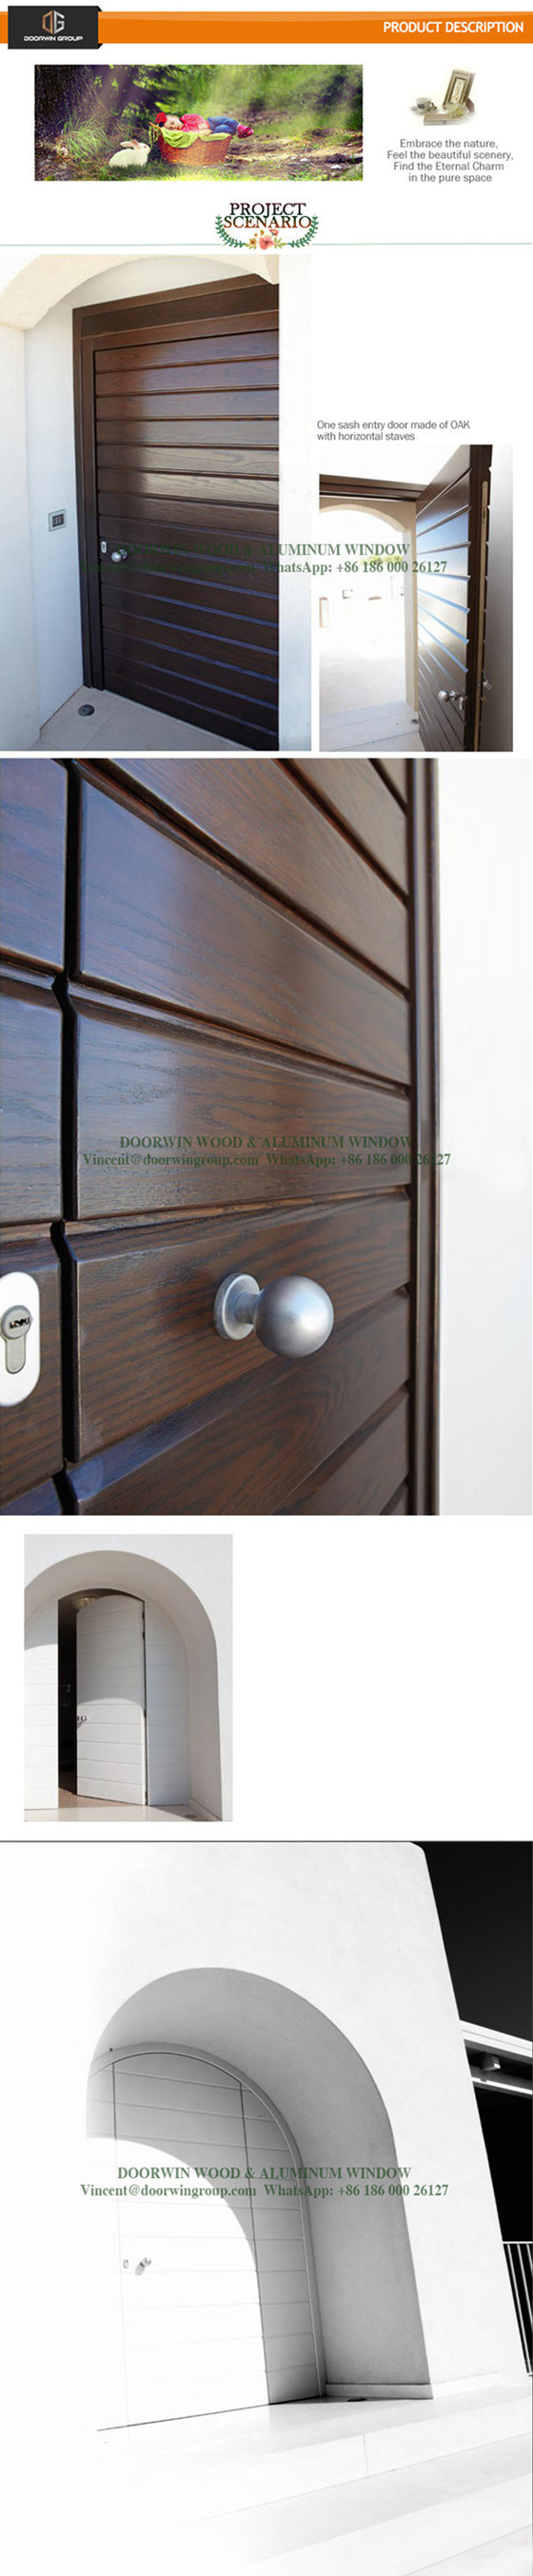 Oak Interior Wooden Double Safety Door, Arch Top Design Glass French Door, One Sash Entry Door